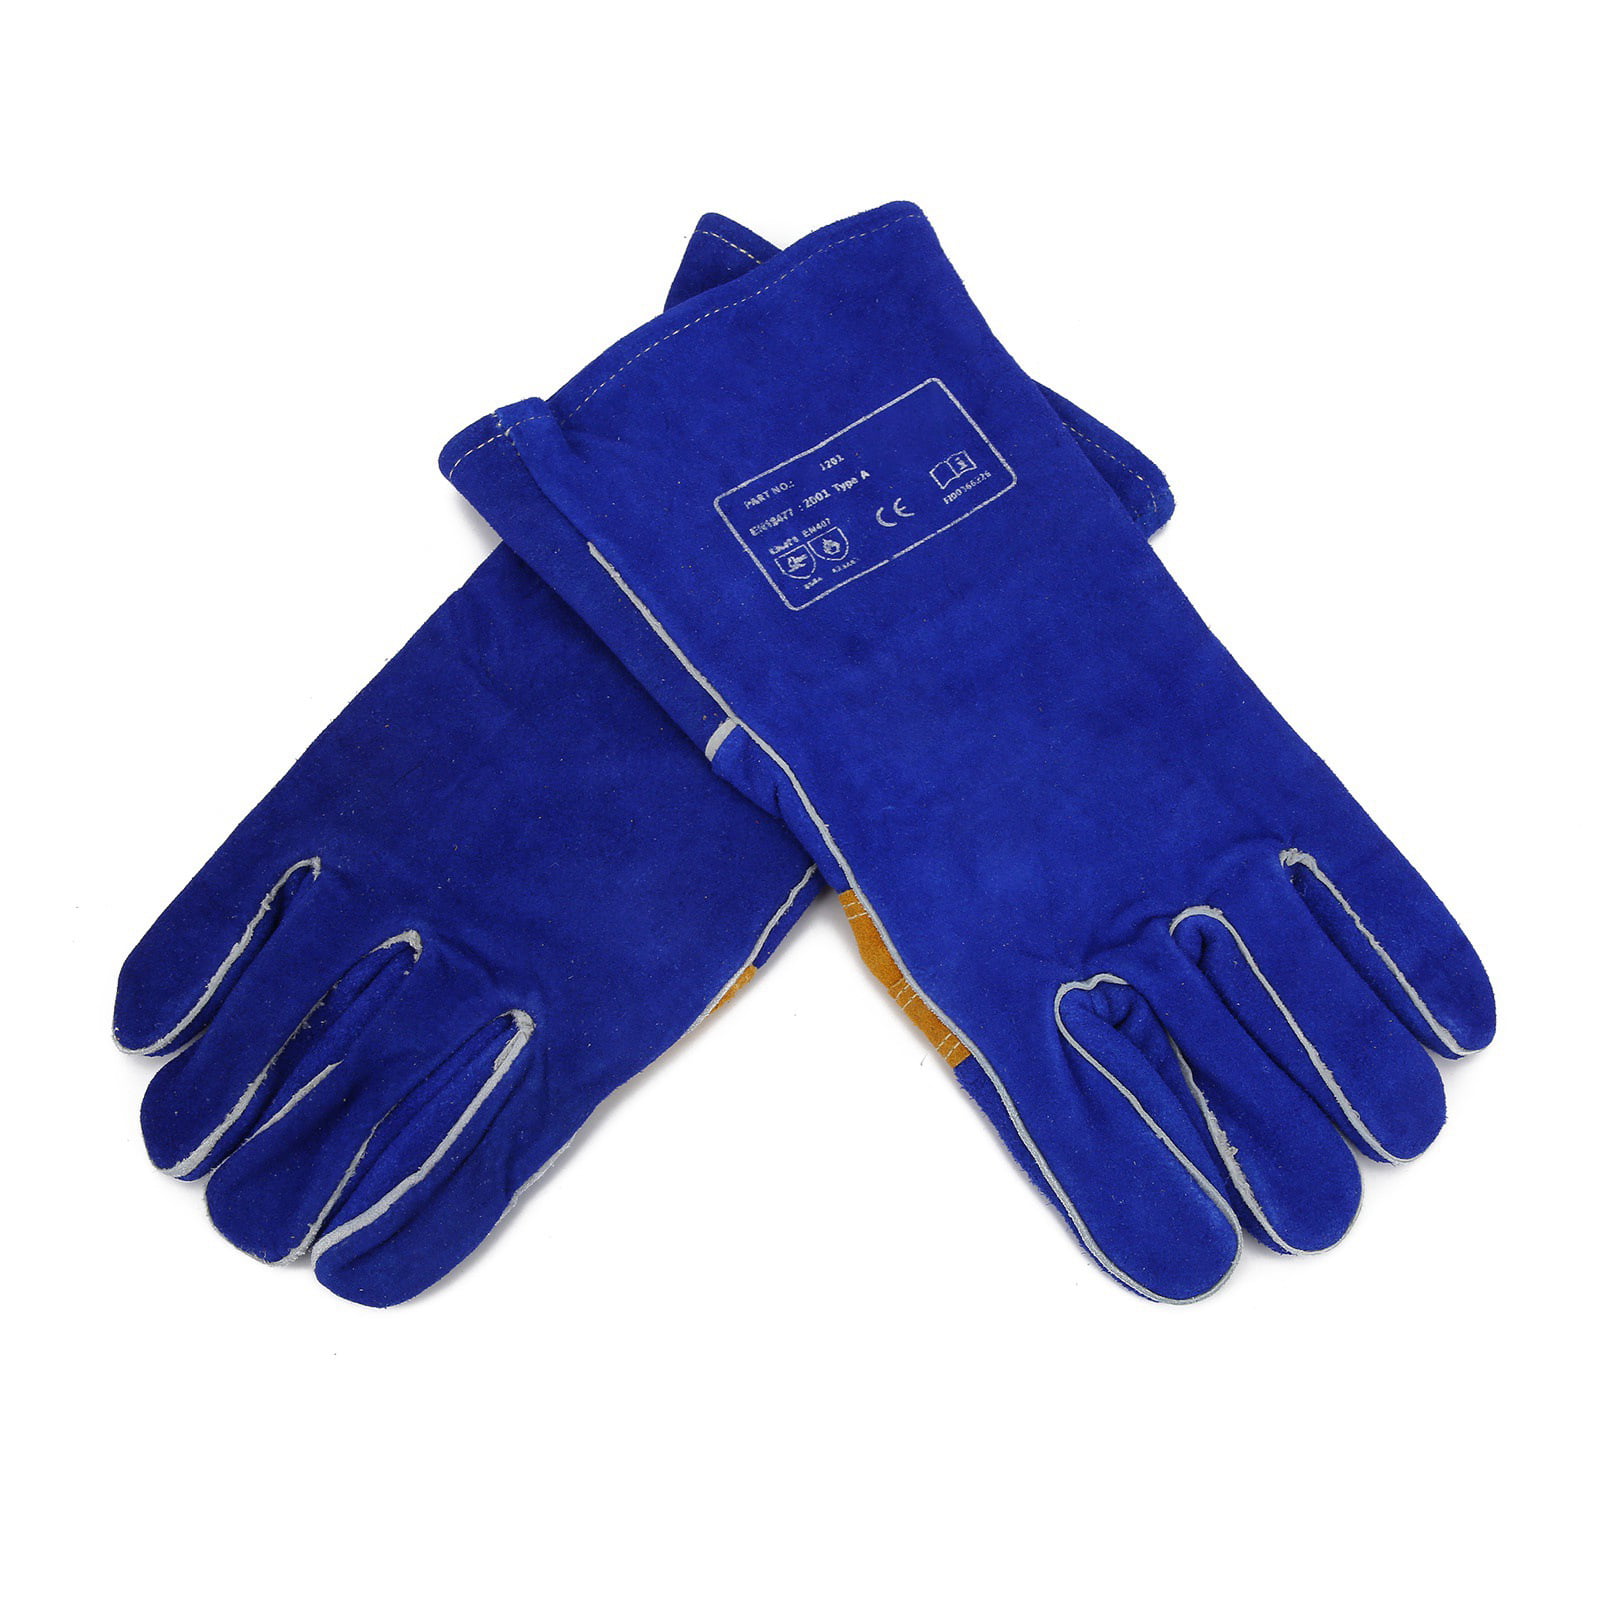 AP-3201 14" Heavy Duty Heat & Fire Resistant Split Cowhide Leather Welding Glove 